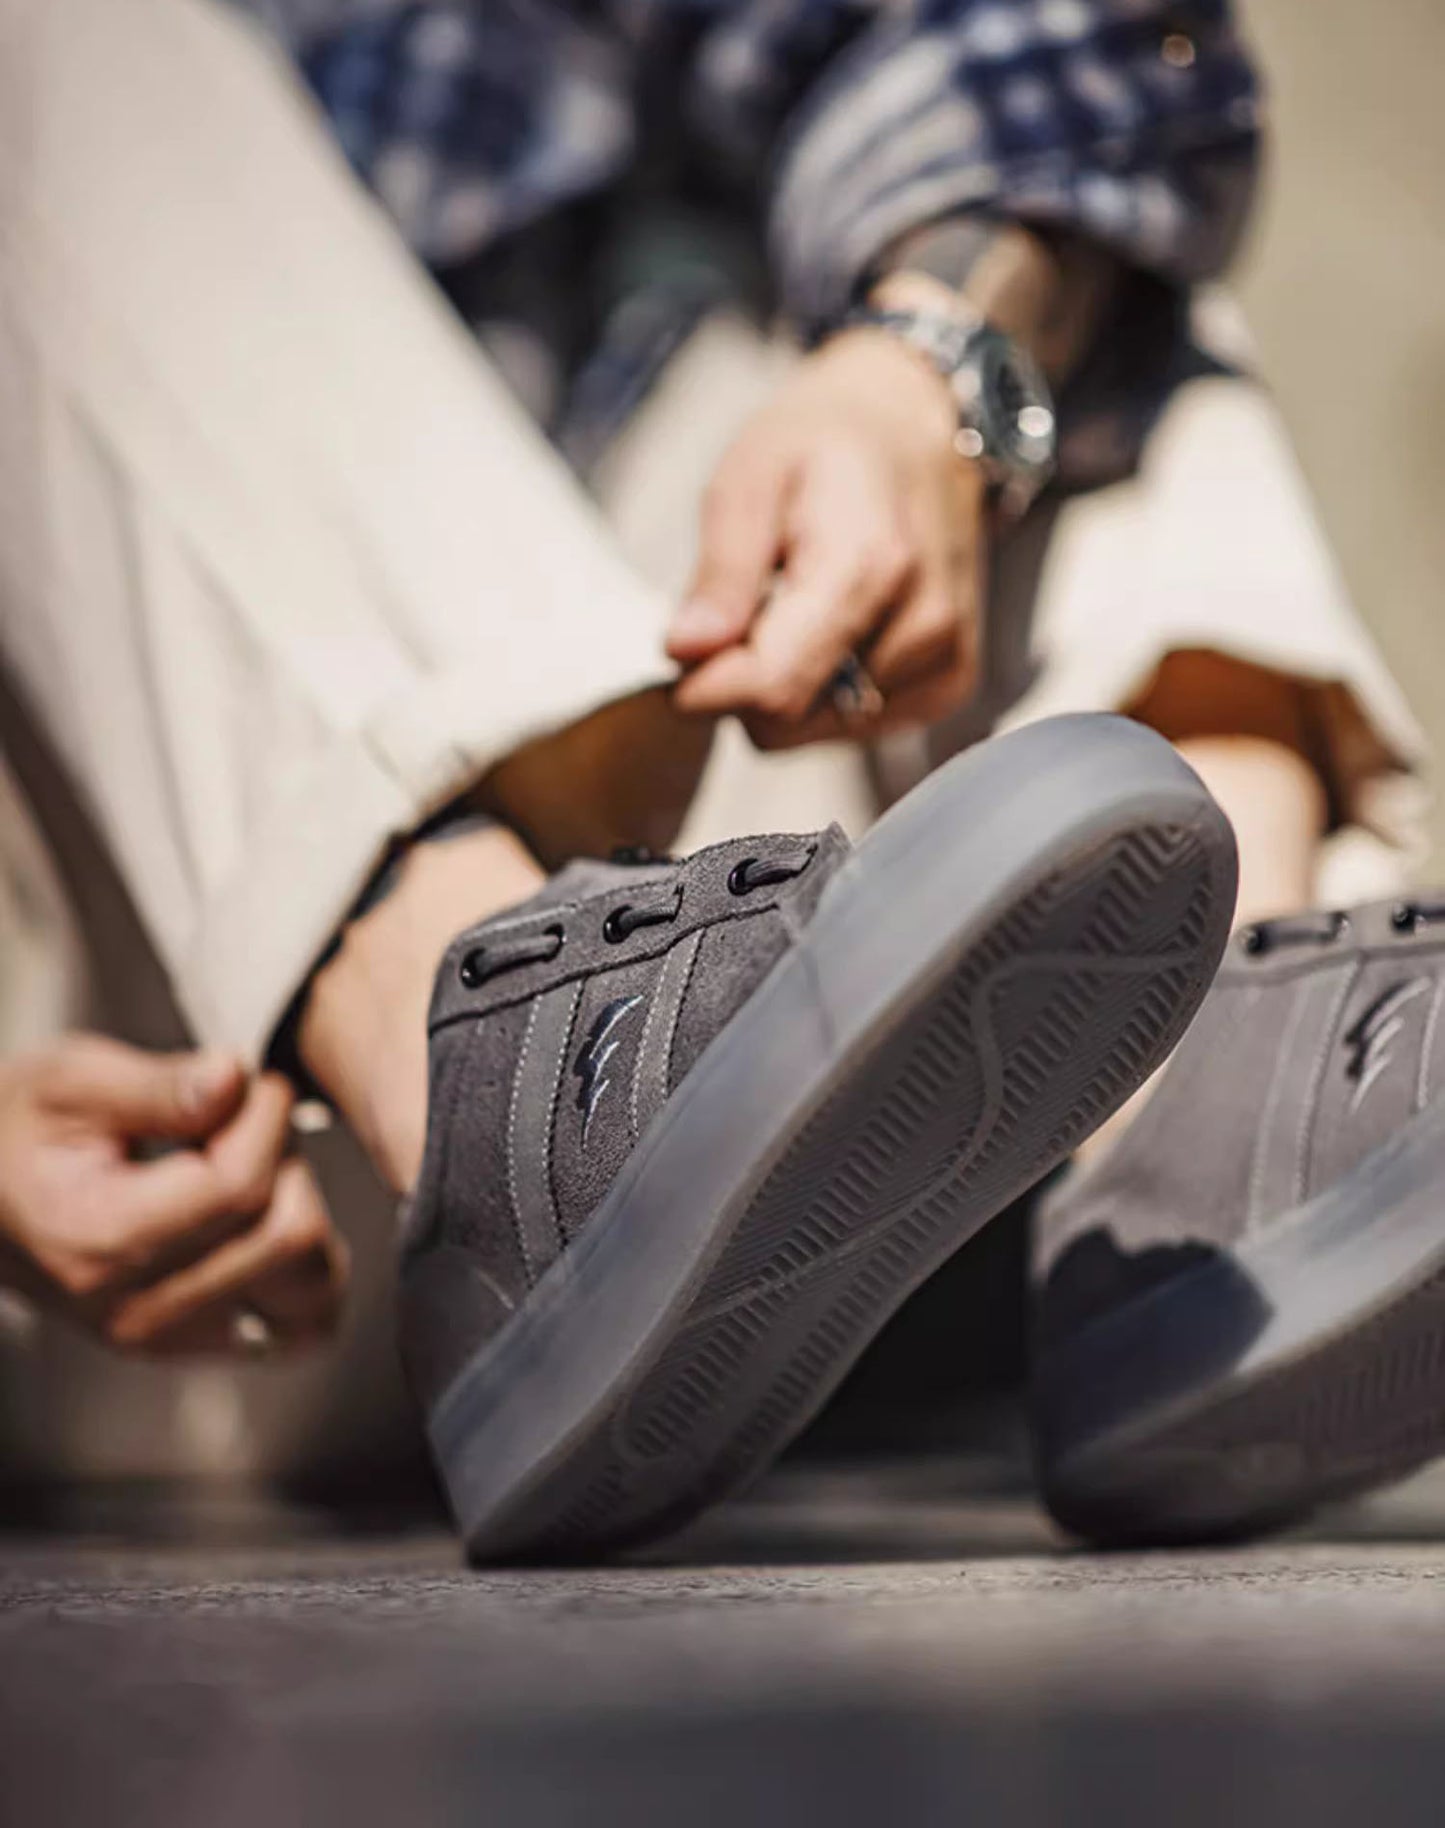 Architectural Building Gray Leather Versatile Men's Canvas Shoes